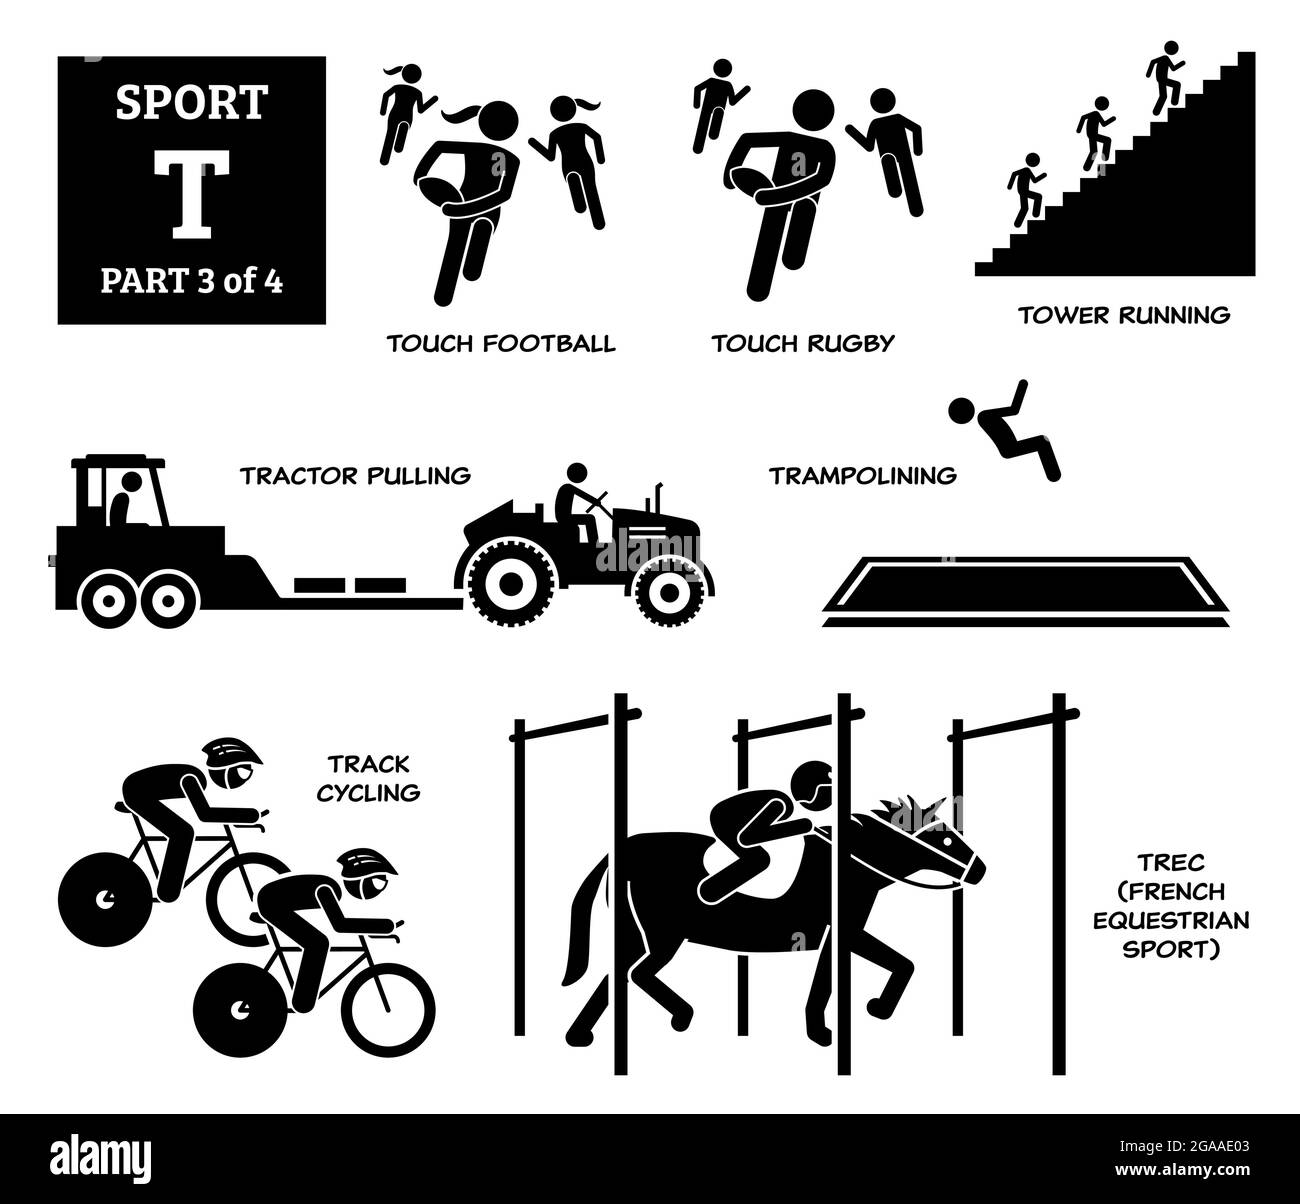 Sport Spiele Alphabet T Vektor Symbole Piktogramm. Berühren Sie Fußball, berühren Sie Rugby, Turm läuft, Traktor ziehen, Trampolinturnen, Track Cycling und TREC Fren Stock Vektor